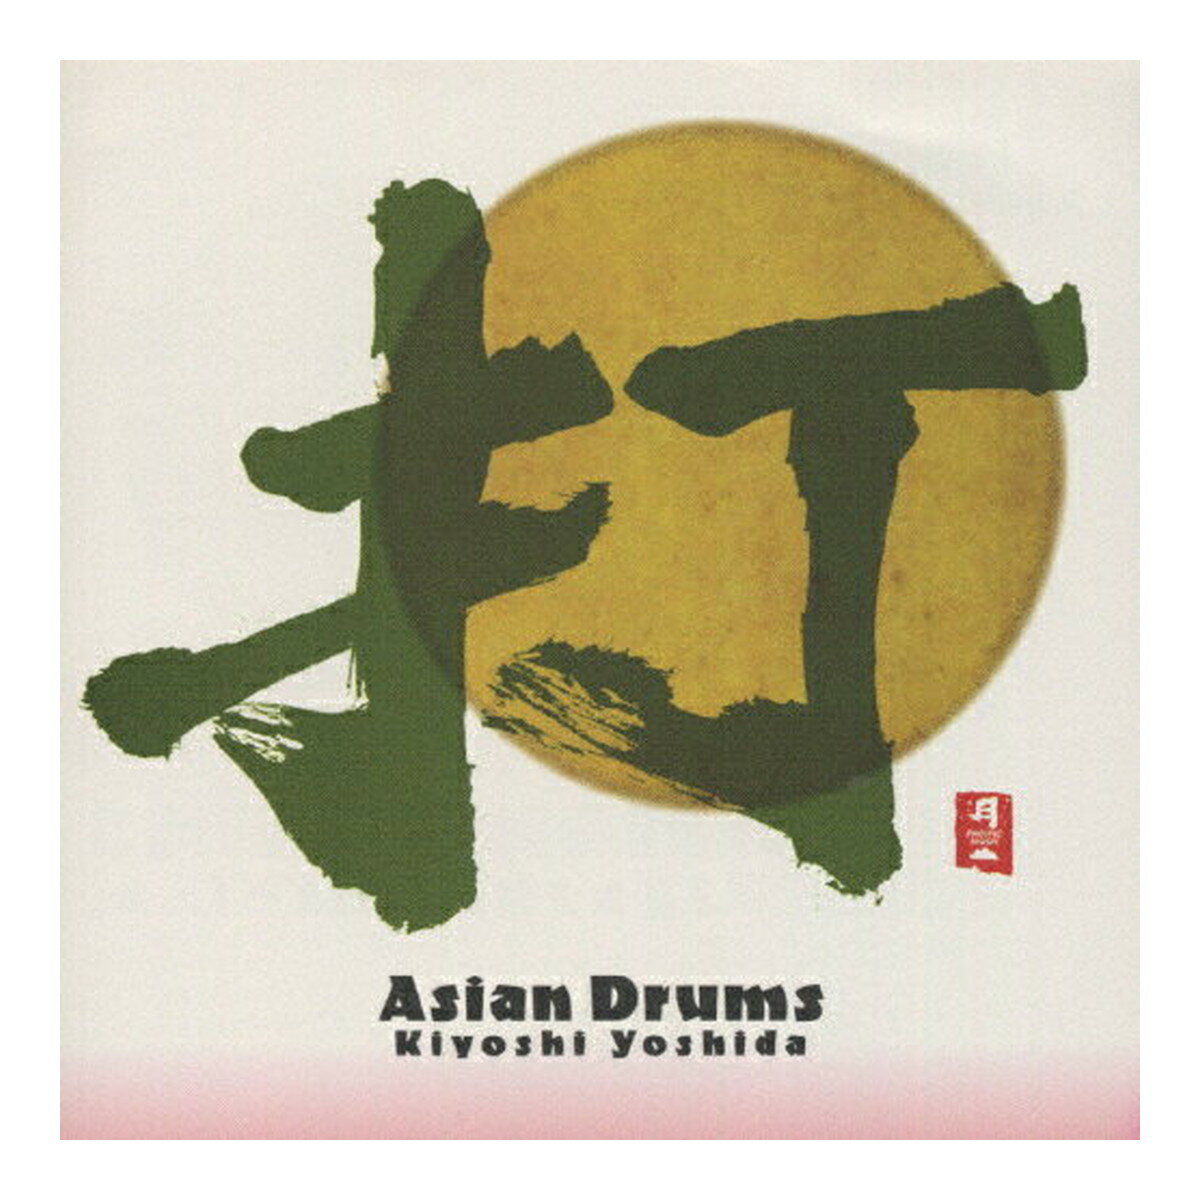 【送料込・まとめ買い×10個セット】日本香堂 コロムビアマーケティング PACIFIC MOON 打 Asian Drums CHCB-10013 CD